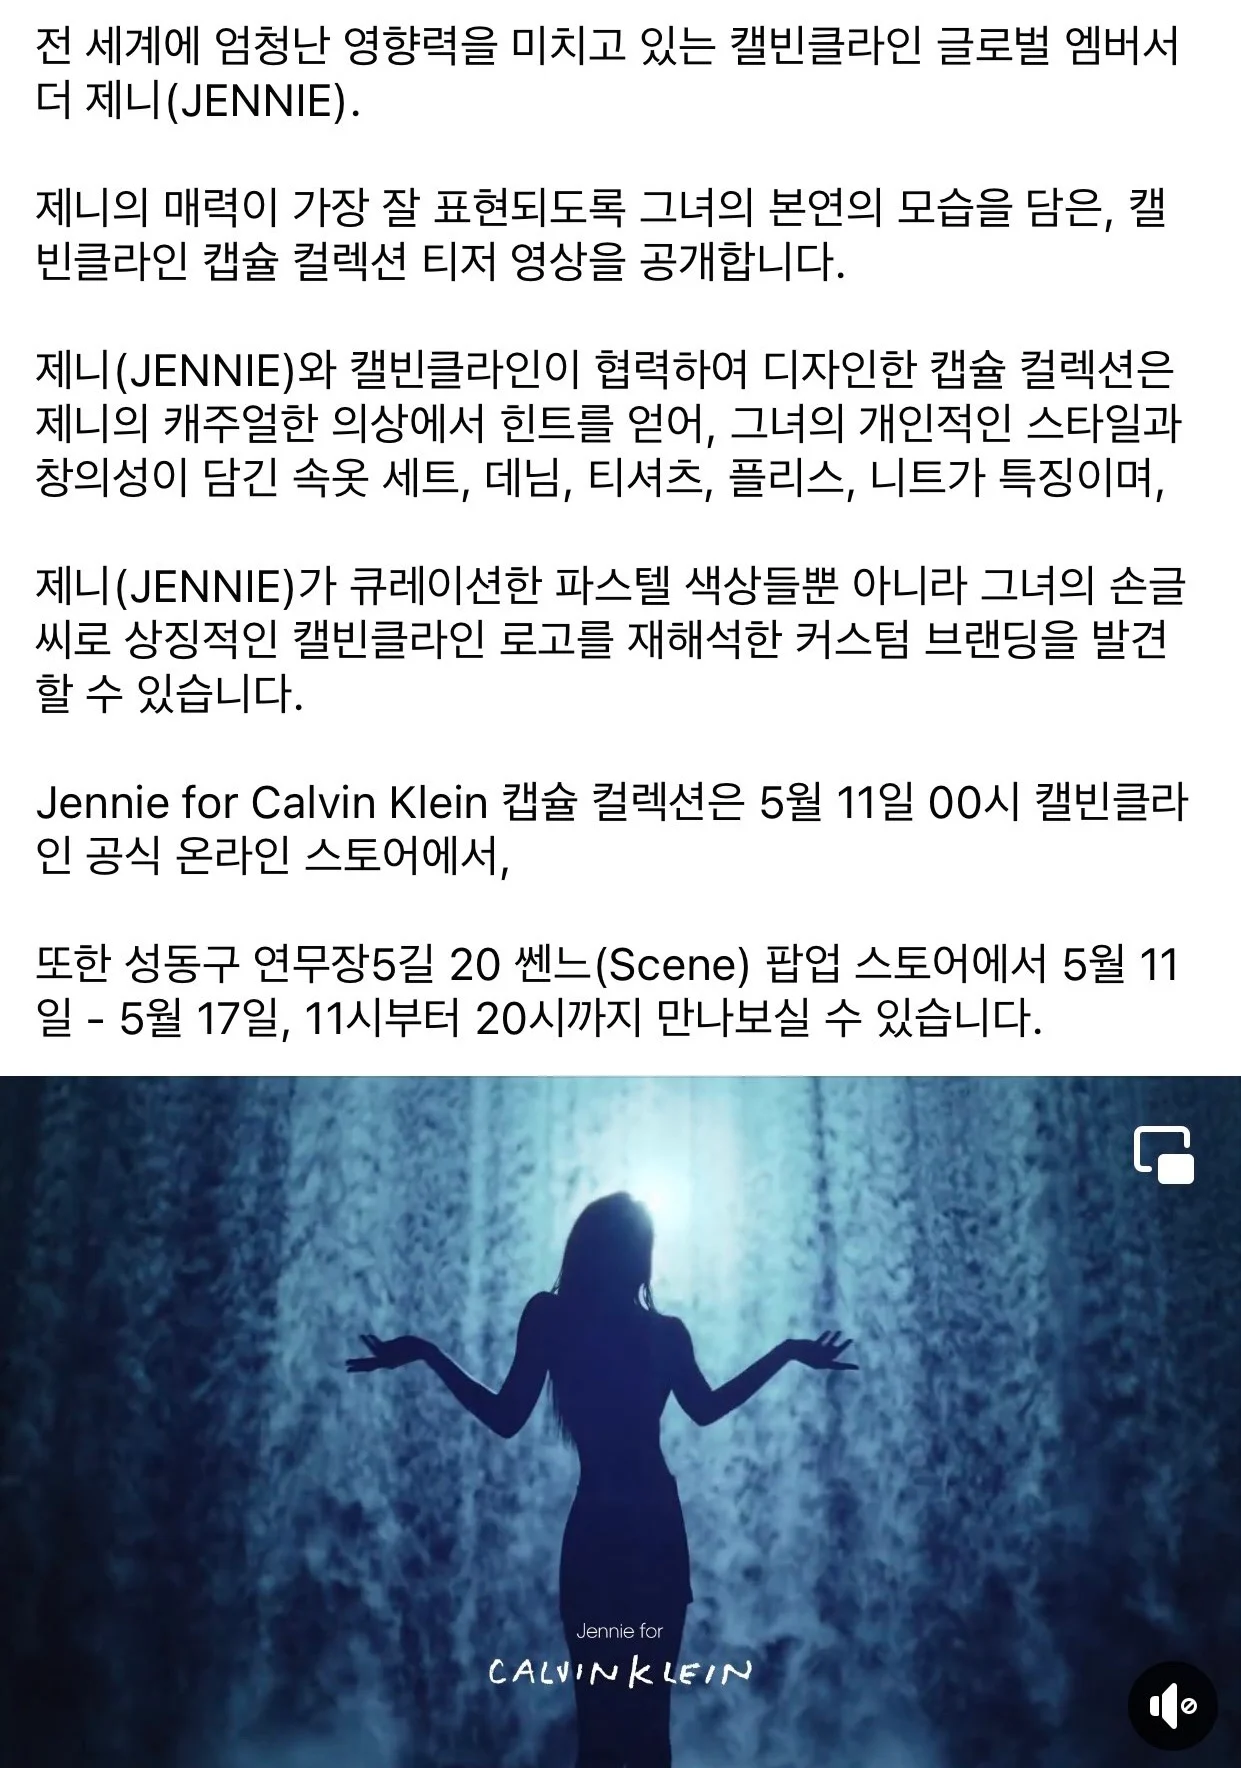 [정보/소식] 제니 캘빈클라인 성수 쎈느에서 팝업 스토어 열림 | 인스티즈